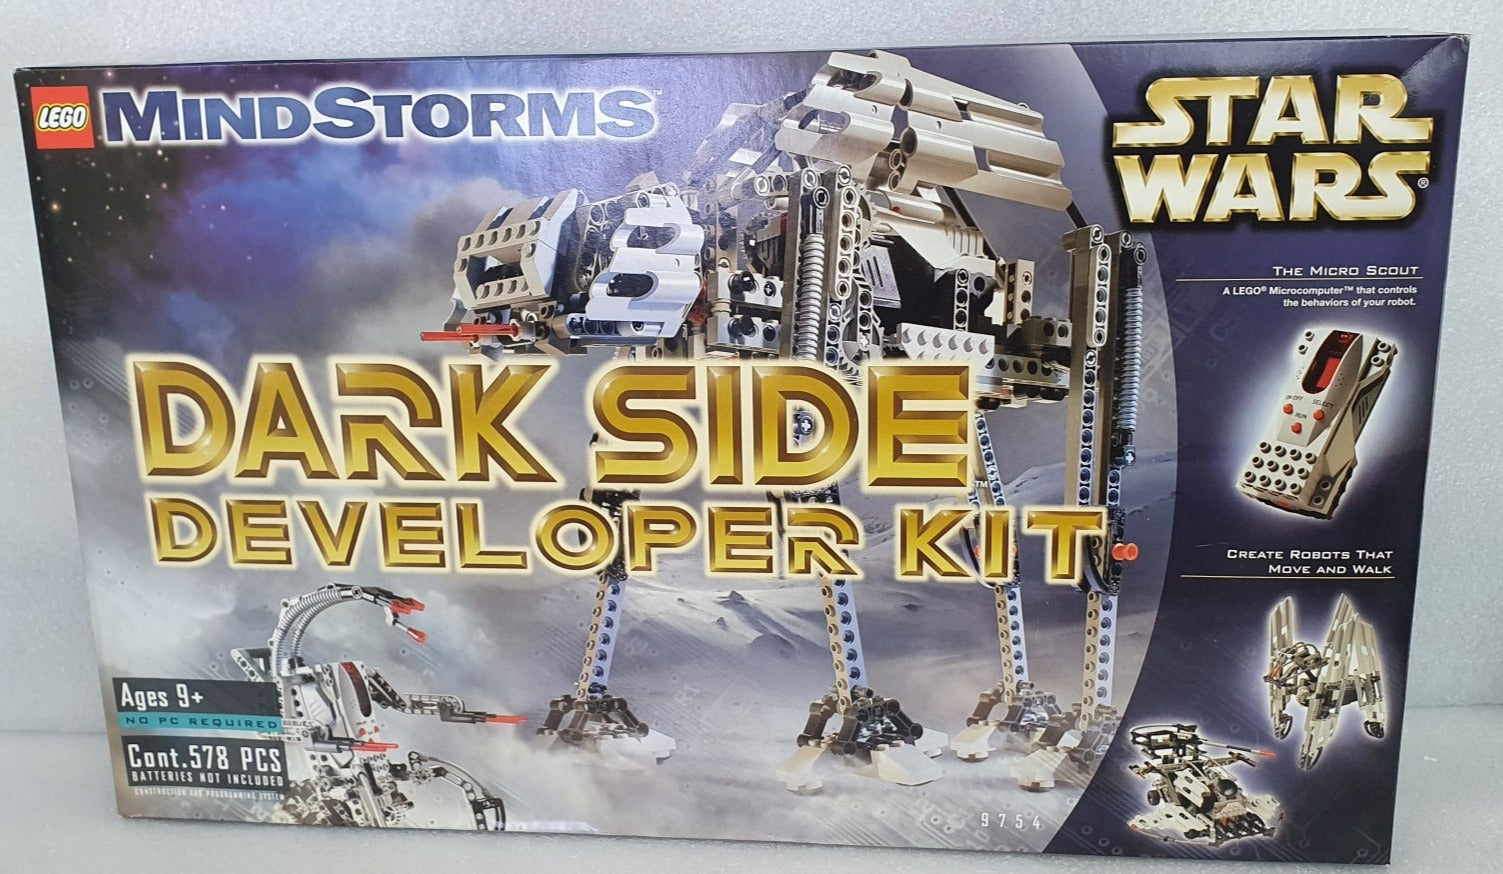 Star Wars Lego - Developer Kit (2000) #9754 Collectables